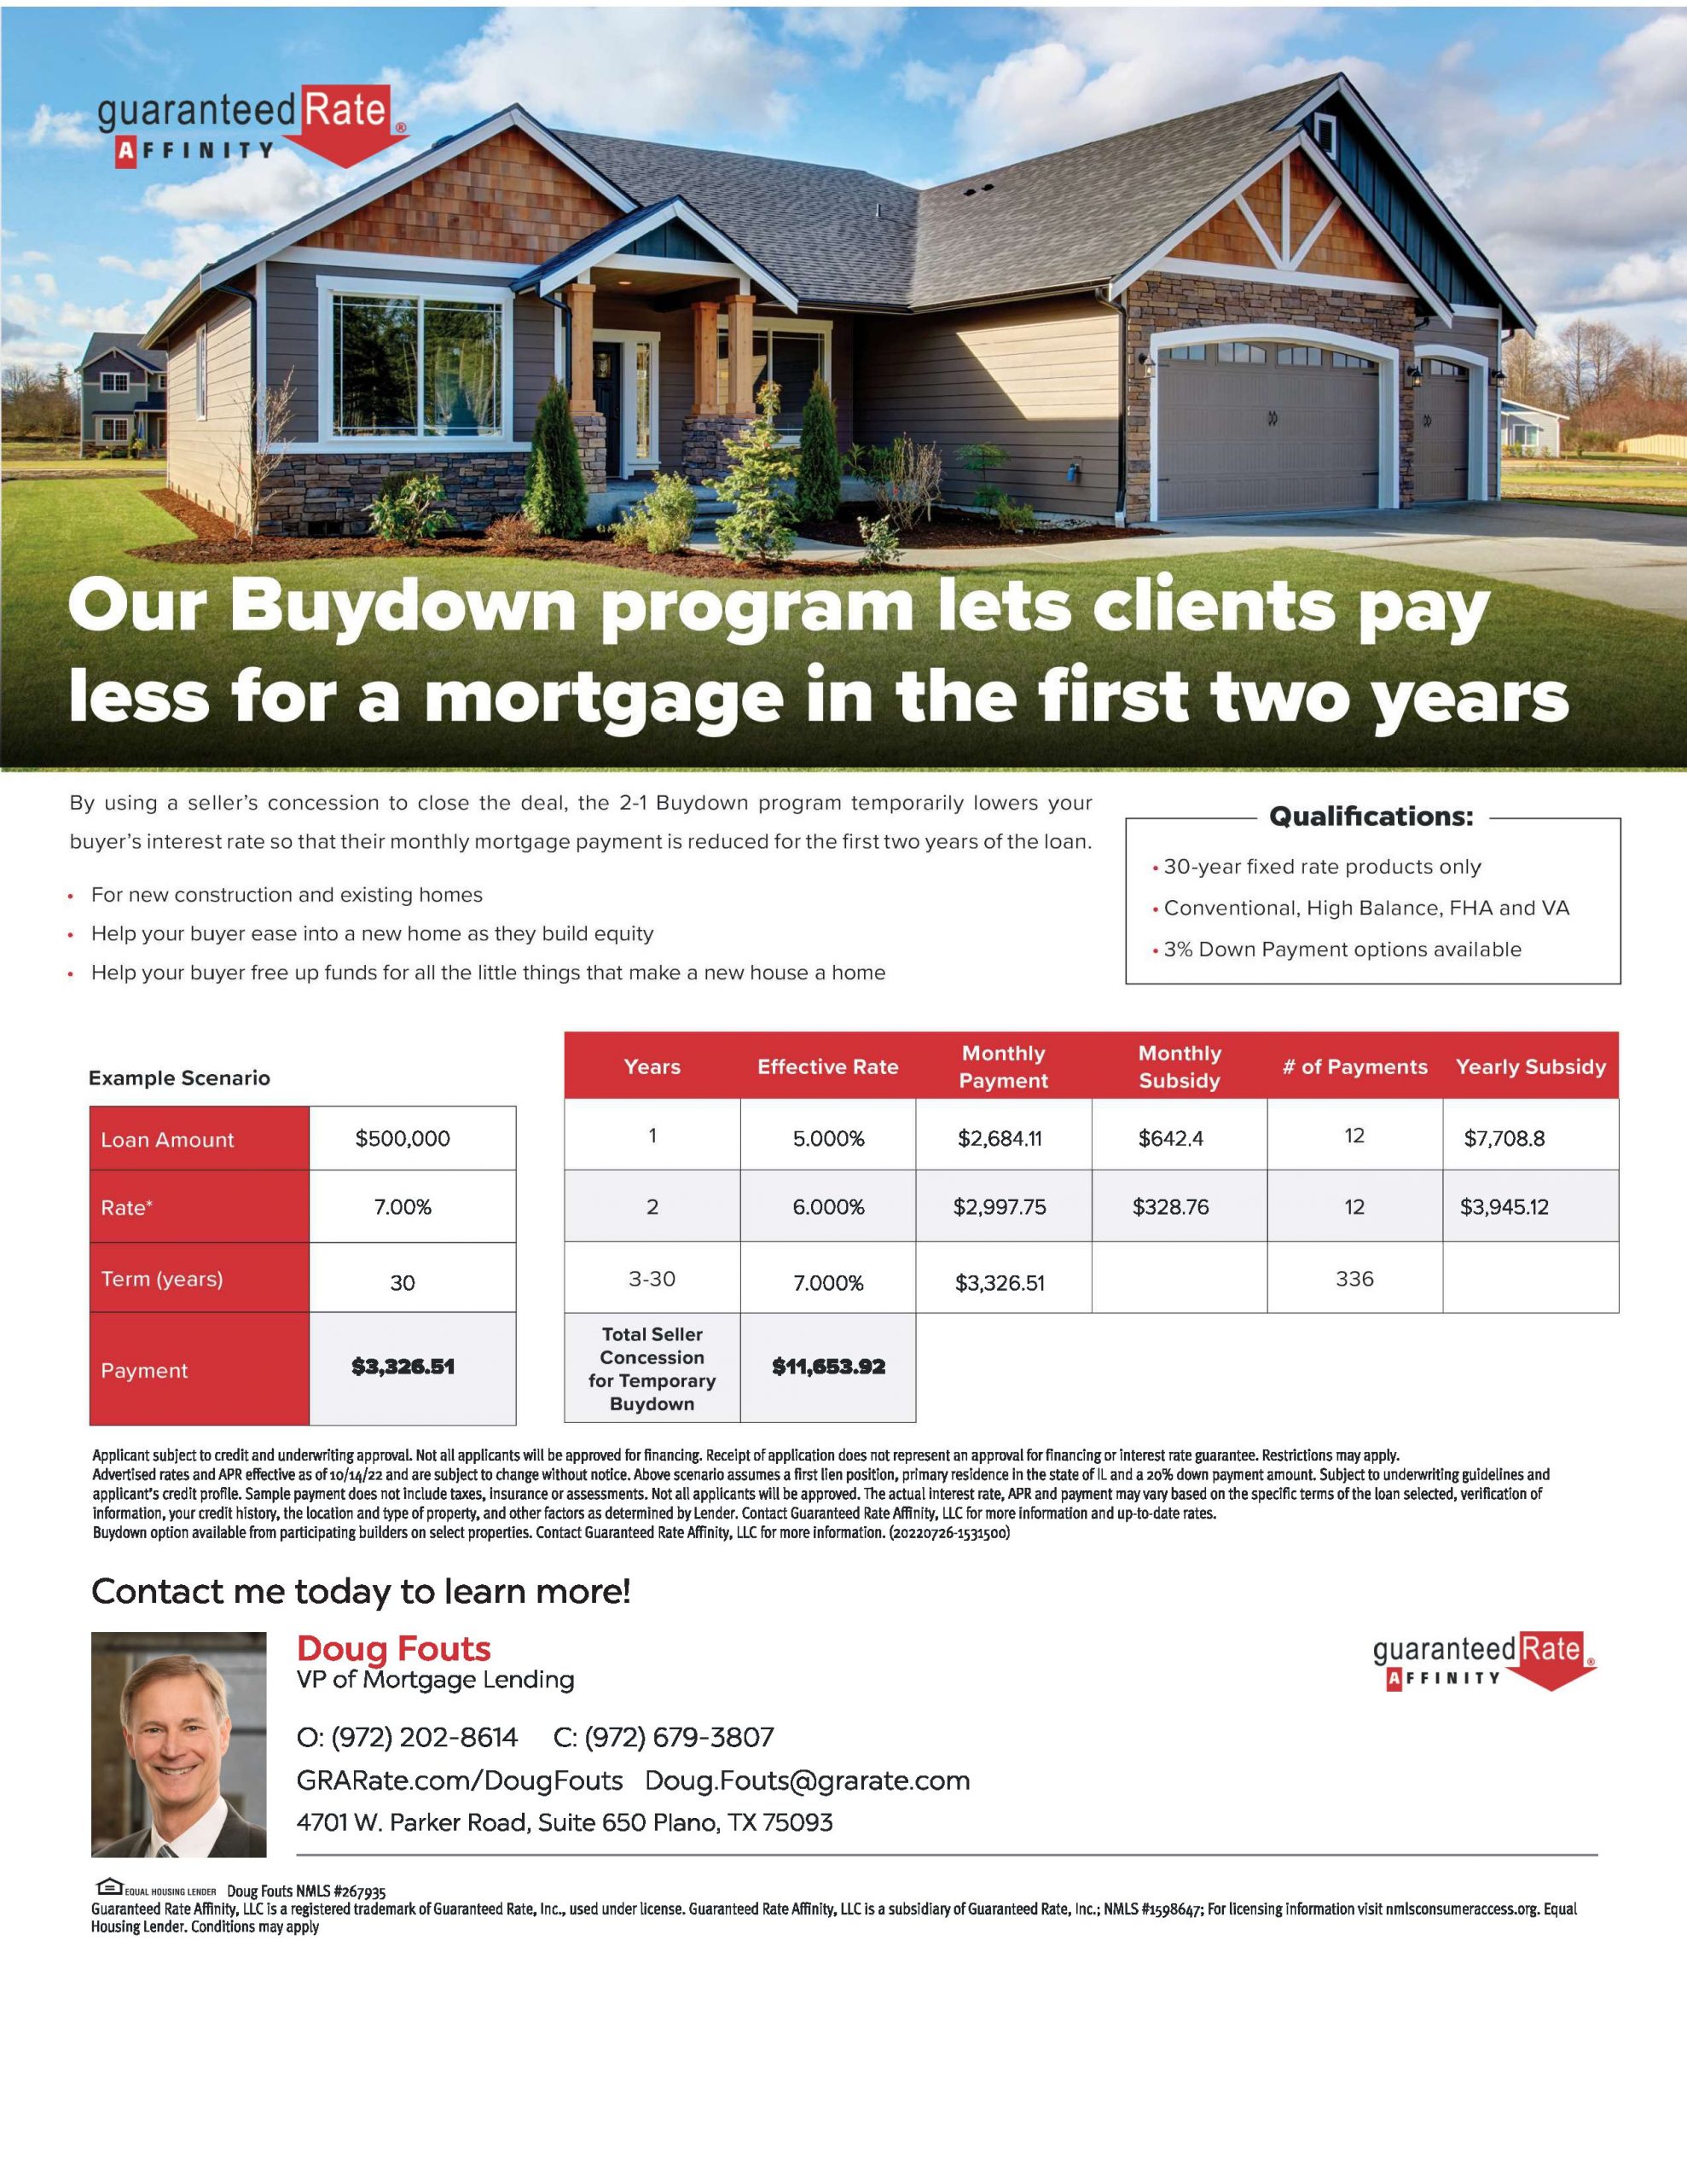 Buydown 2-1 Loan Program